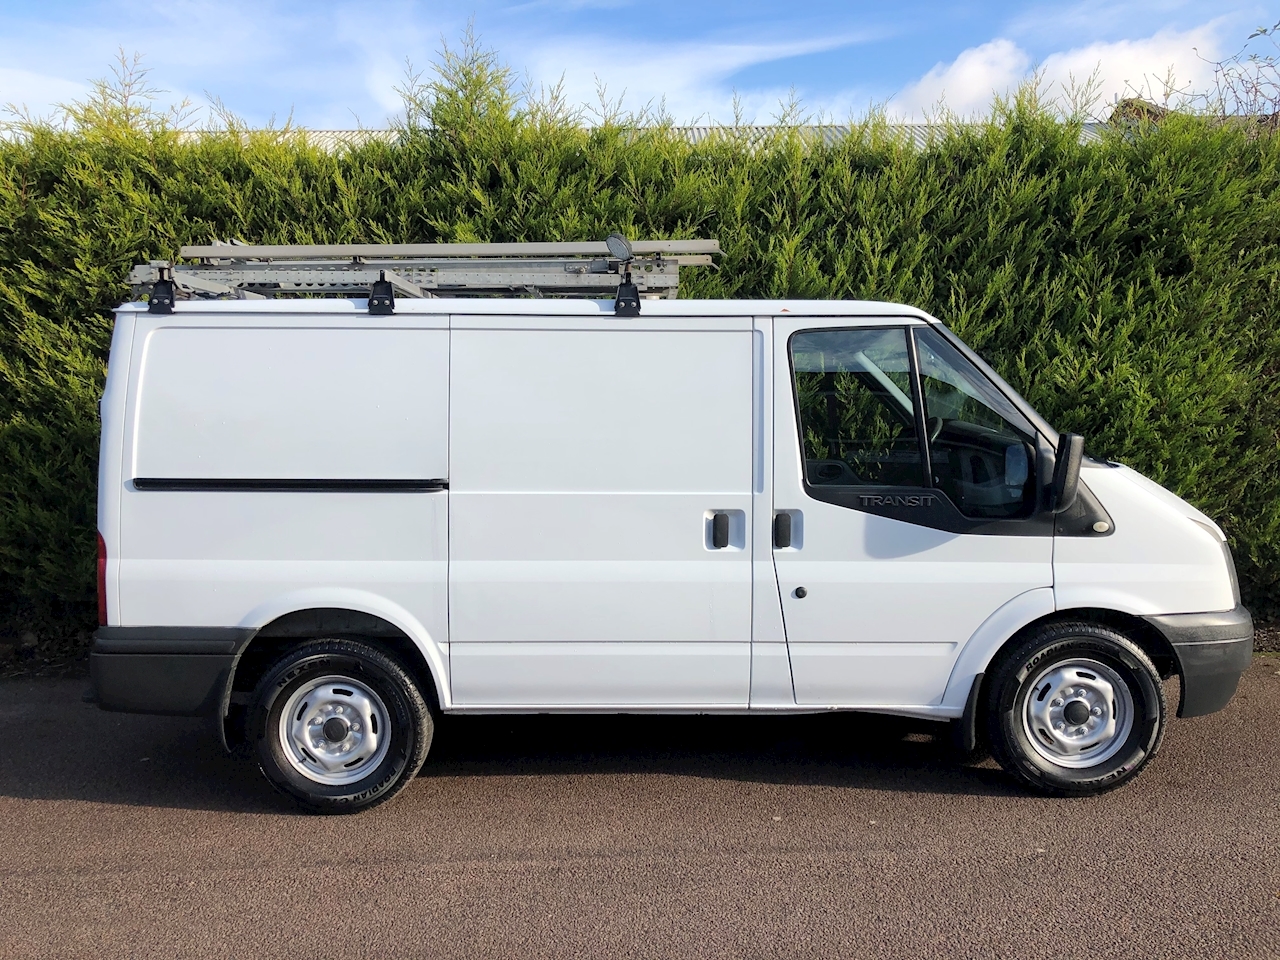 4x4 panel vans for sale uk